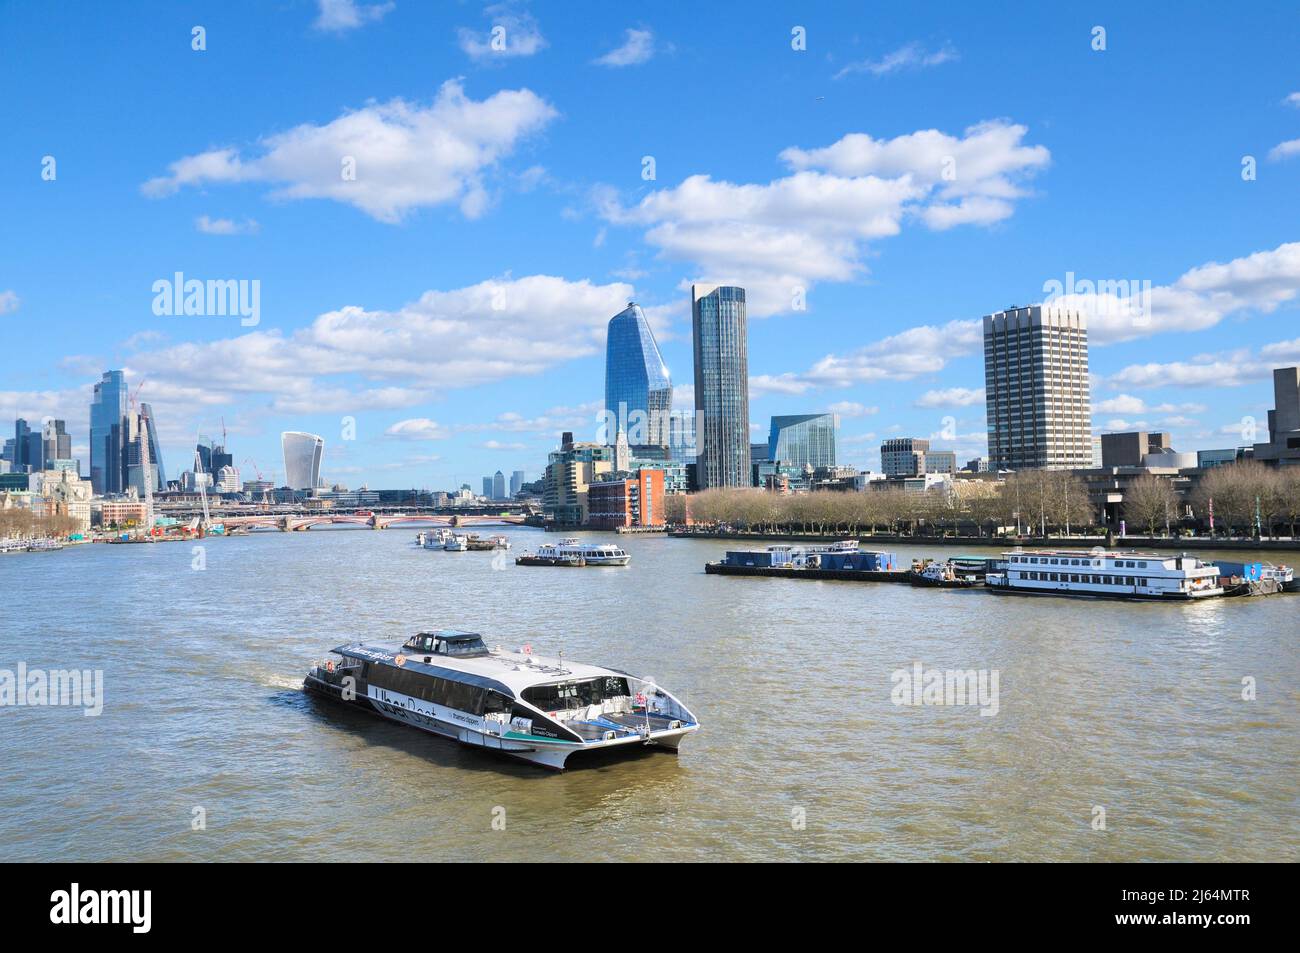 El horizonte de Londres con un barco cortapelos en el río Támesis, vista desde el puente Waterloo hacia los rascacielos de un Blackfriars y la torre South Bank, Inglaterra, Reino Unido Foto de stock